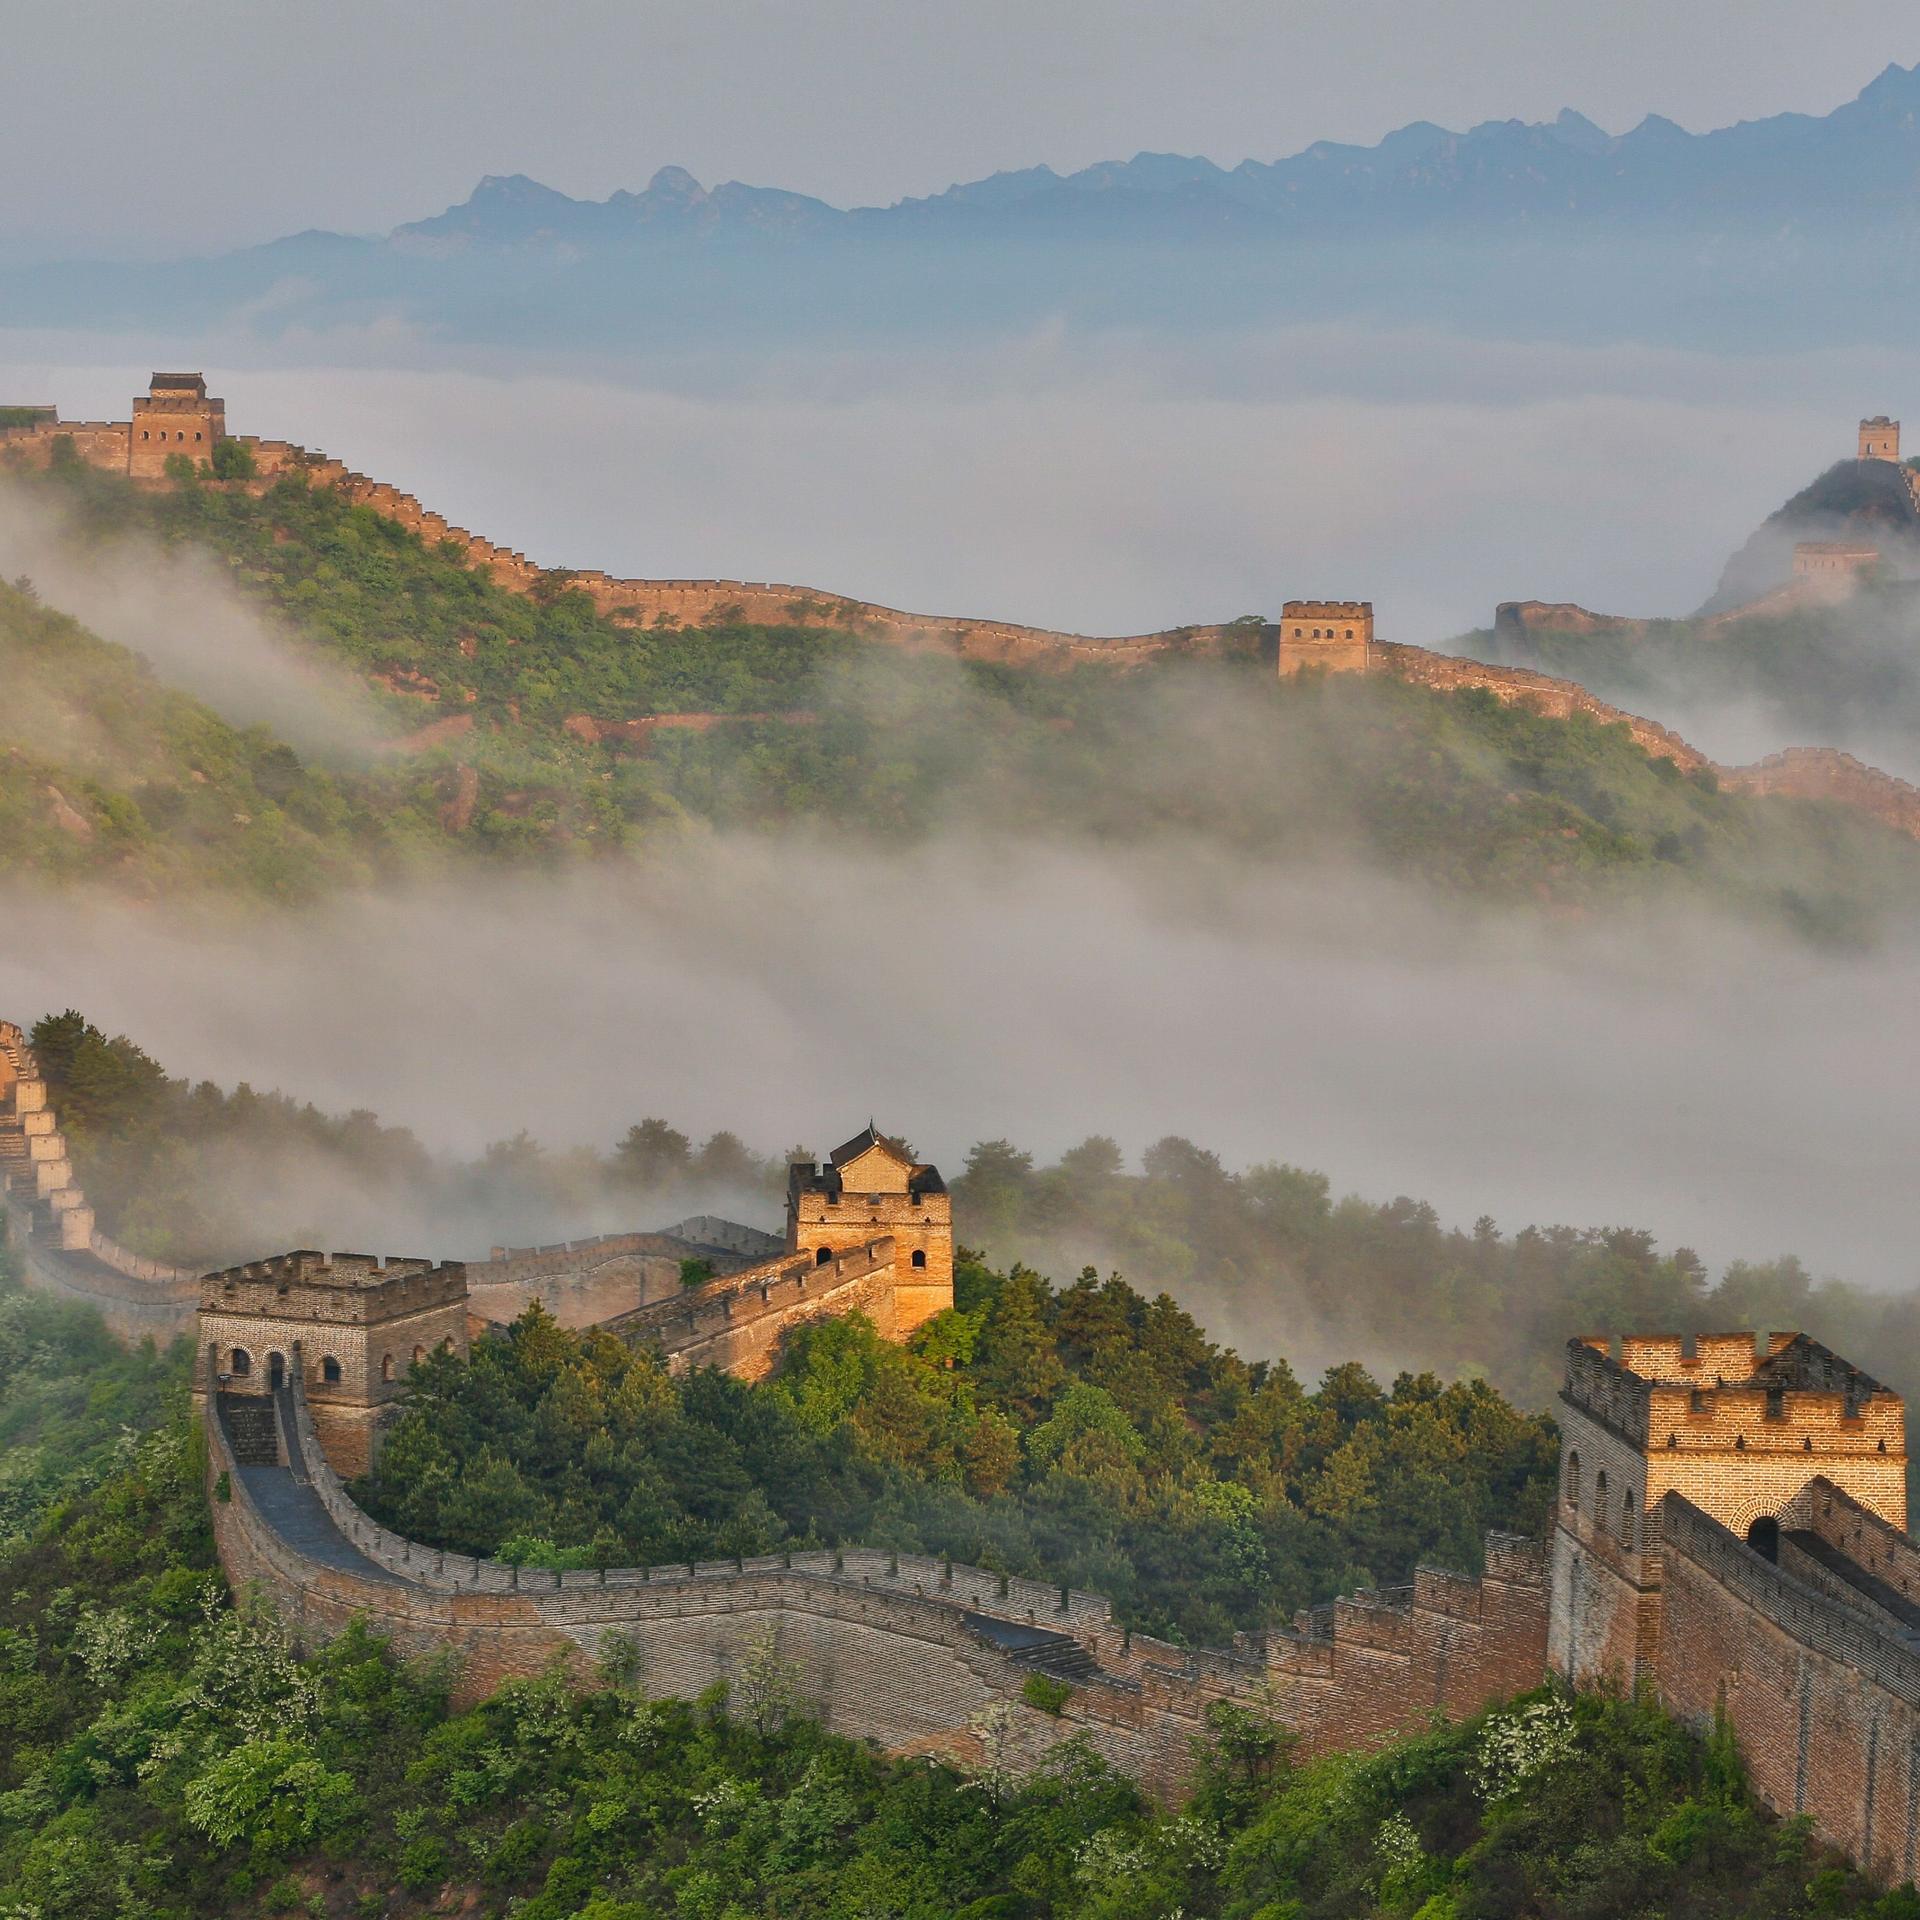 Chinesische Mauer von oben in morgendlicher Lichstimmung mit Nebel.